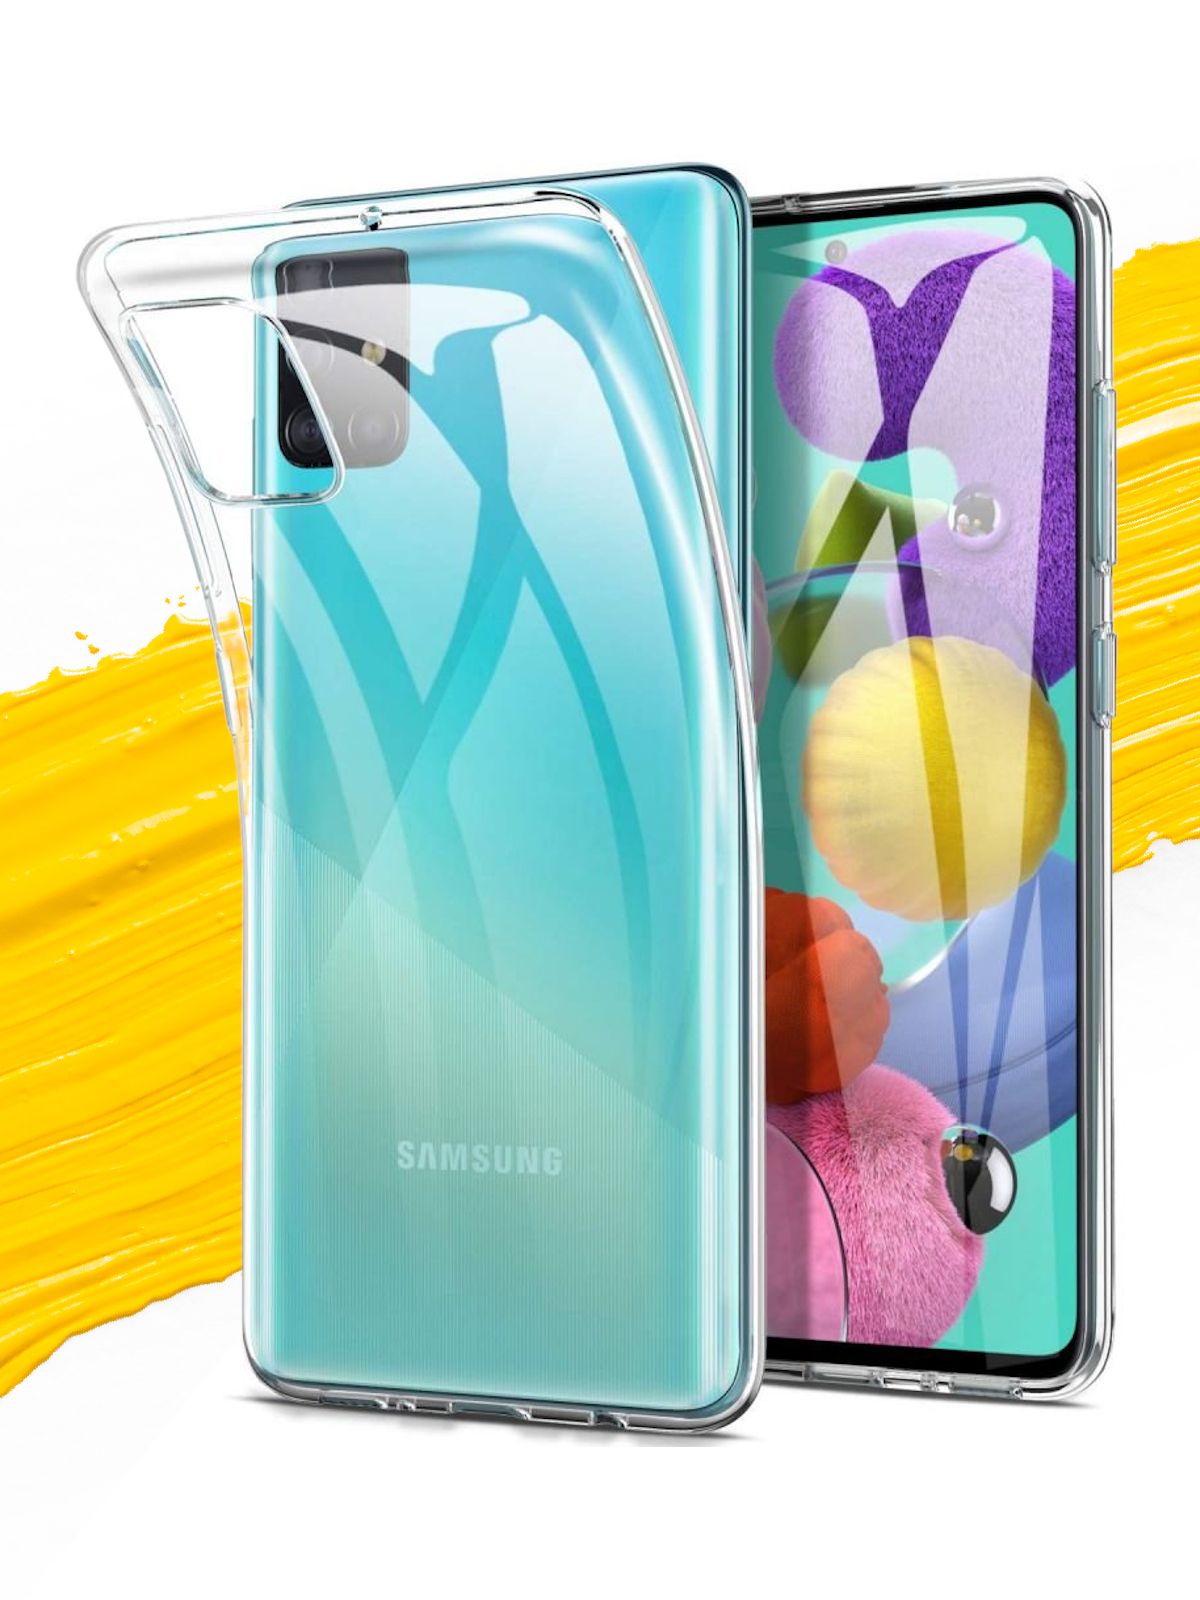 Чехол для смартфона самсунг галакси. Samsung Galaxy a51 чехол. Прозрачный силиконовый чехол для Samsung Galaxy a12. Чехол для Samsung Galaxy а51 прозрачный силиконовый. Прозрачный чехол для Samsung Galaxy a51.